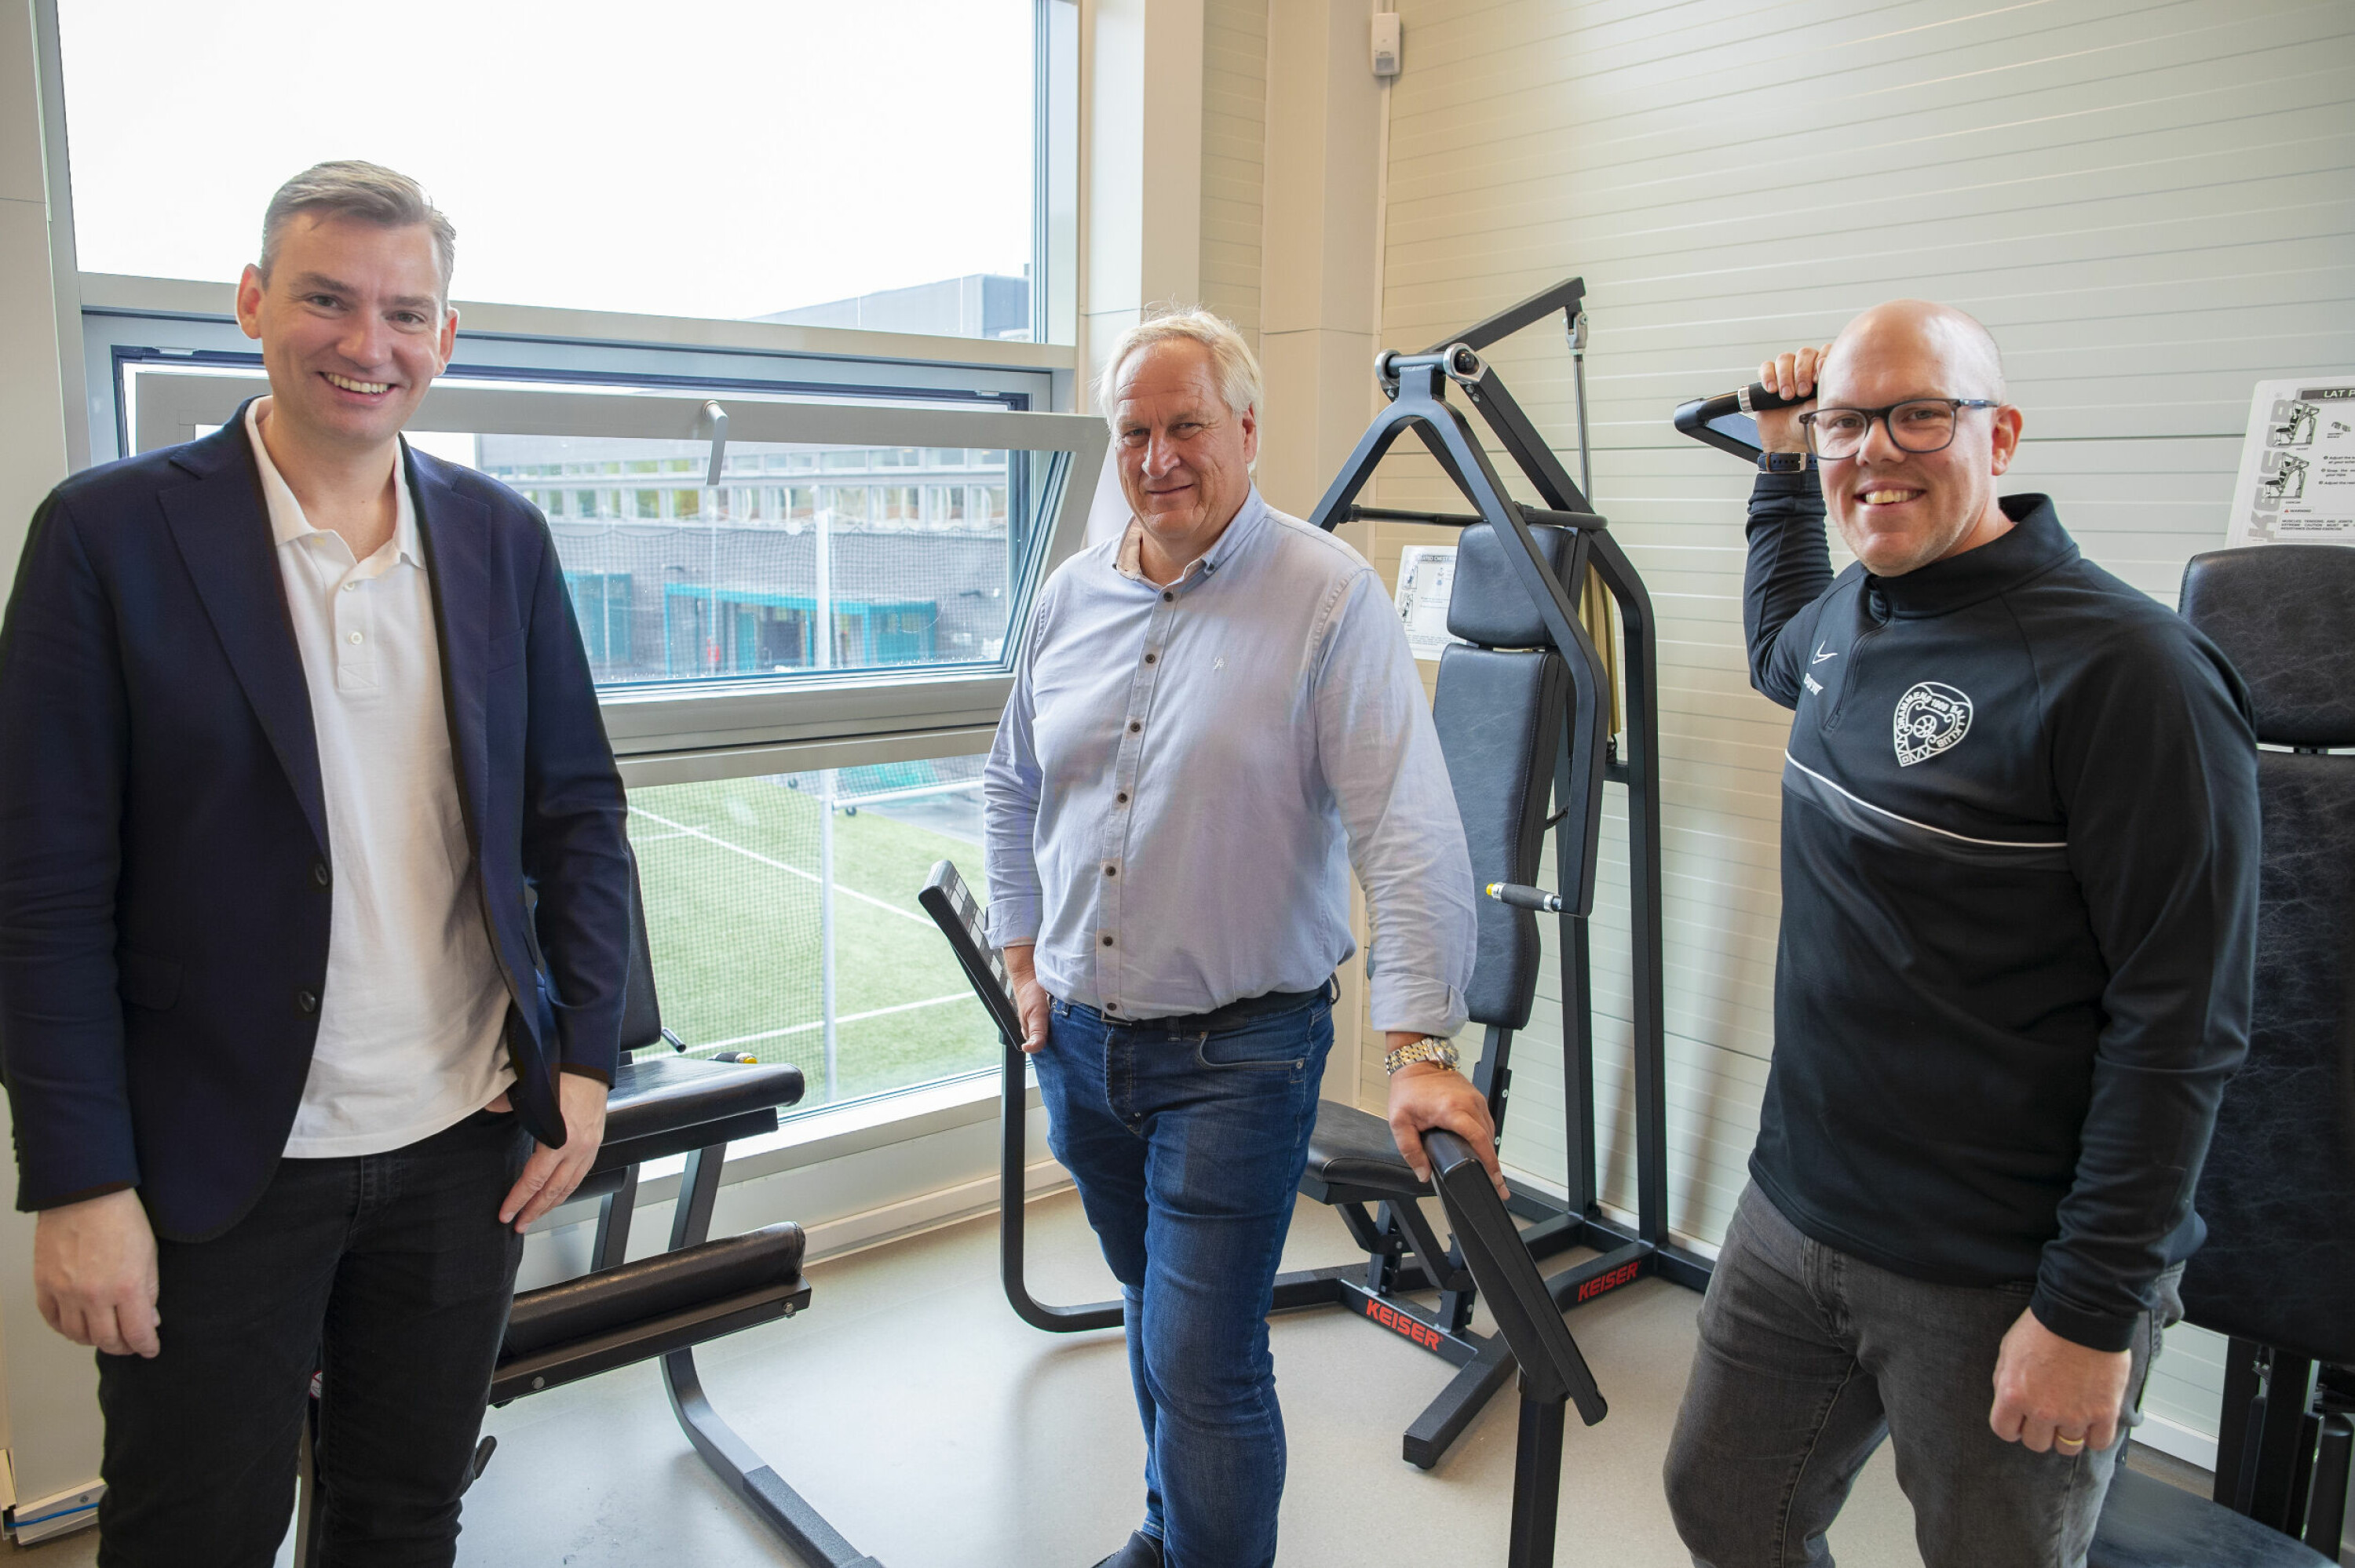 SUKSESS: Programmet med gratis seniortrening i regi av Drammen ballklubb har vært en stor suksess de siste årene, konstaterer f.v. Henrik Asheim, Kjell Arne Hermansen og DBK-sjef Ola Apenes.